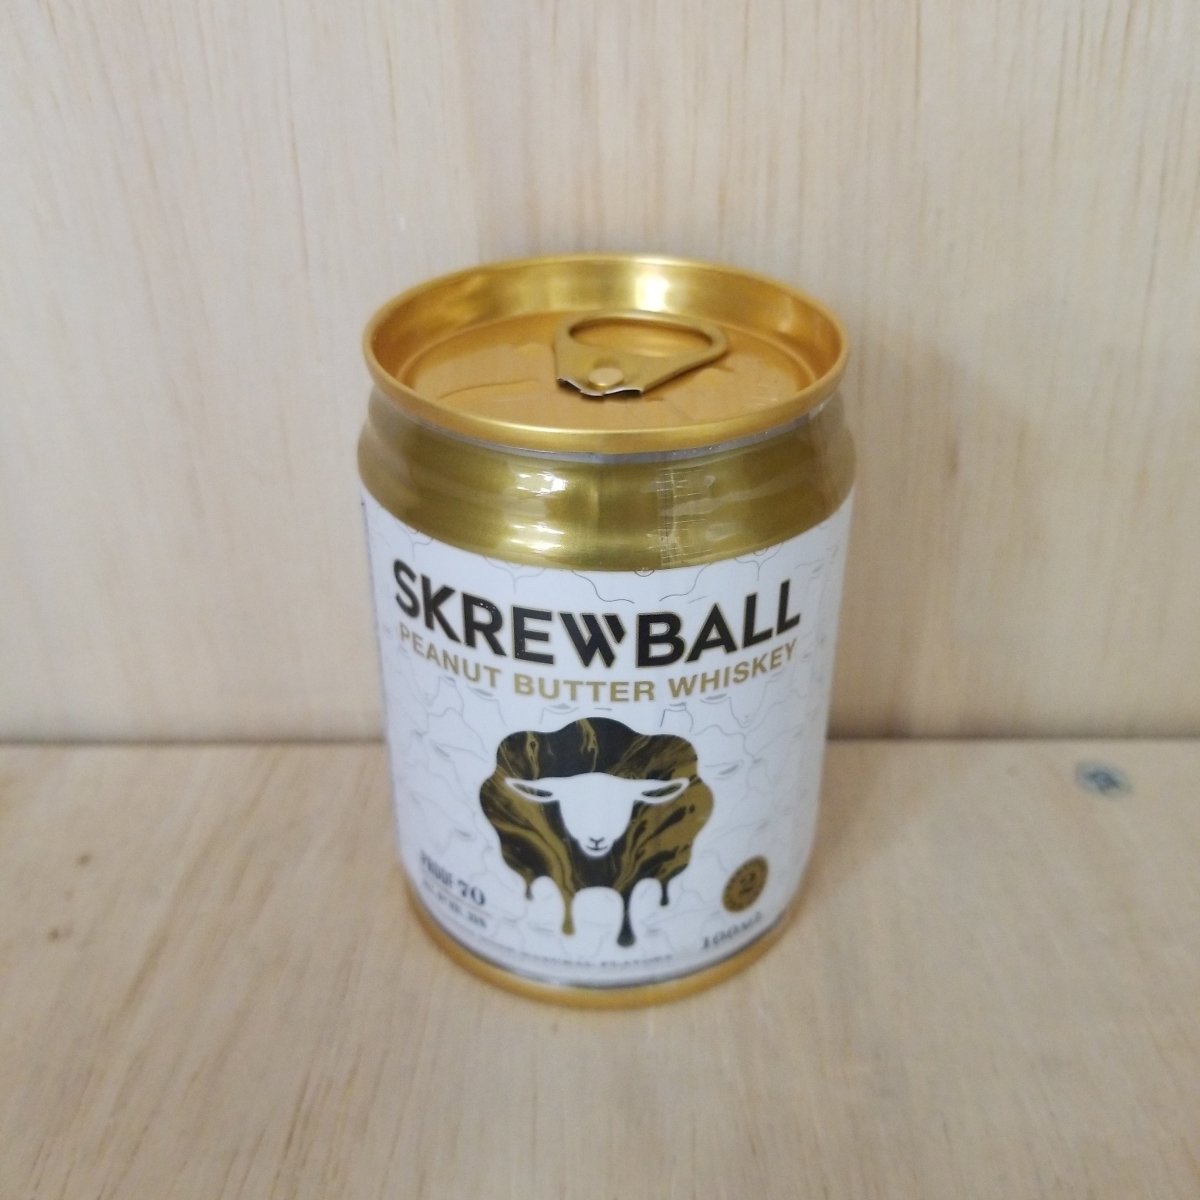 Skrewball Peanut Butter Whiskey 100ml - Sip & Say